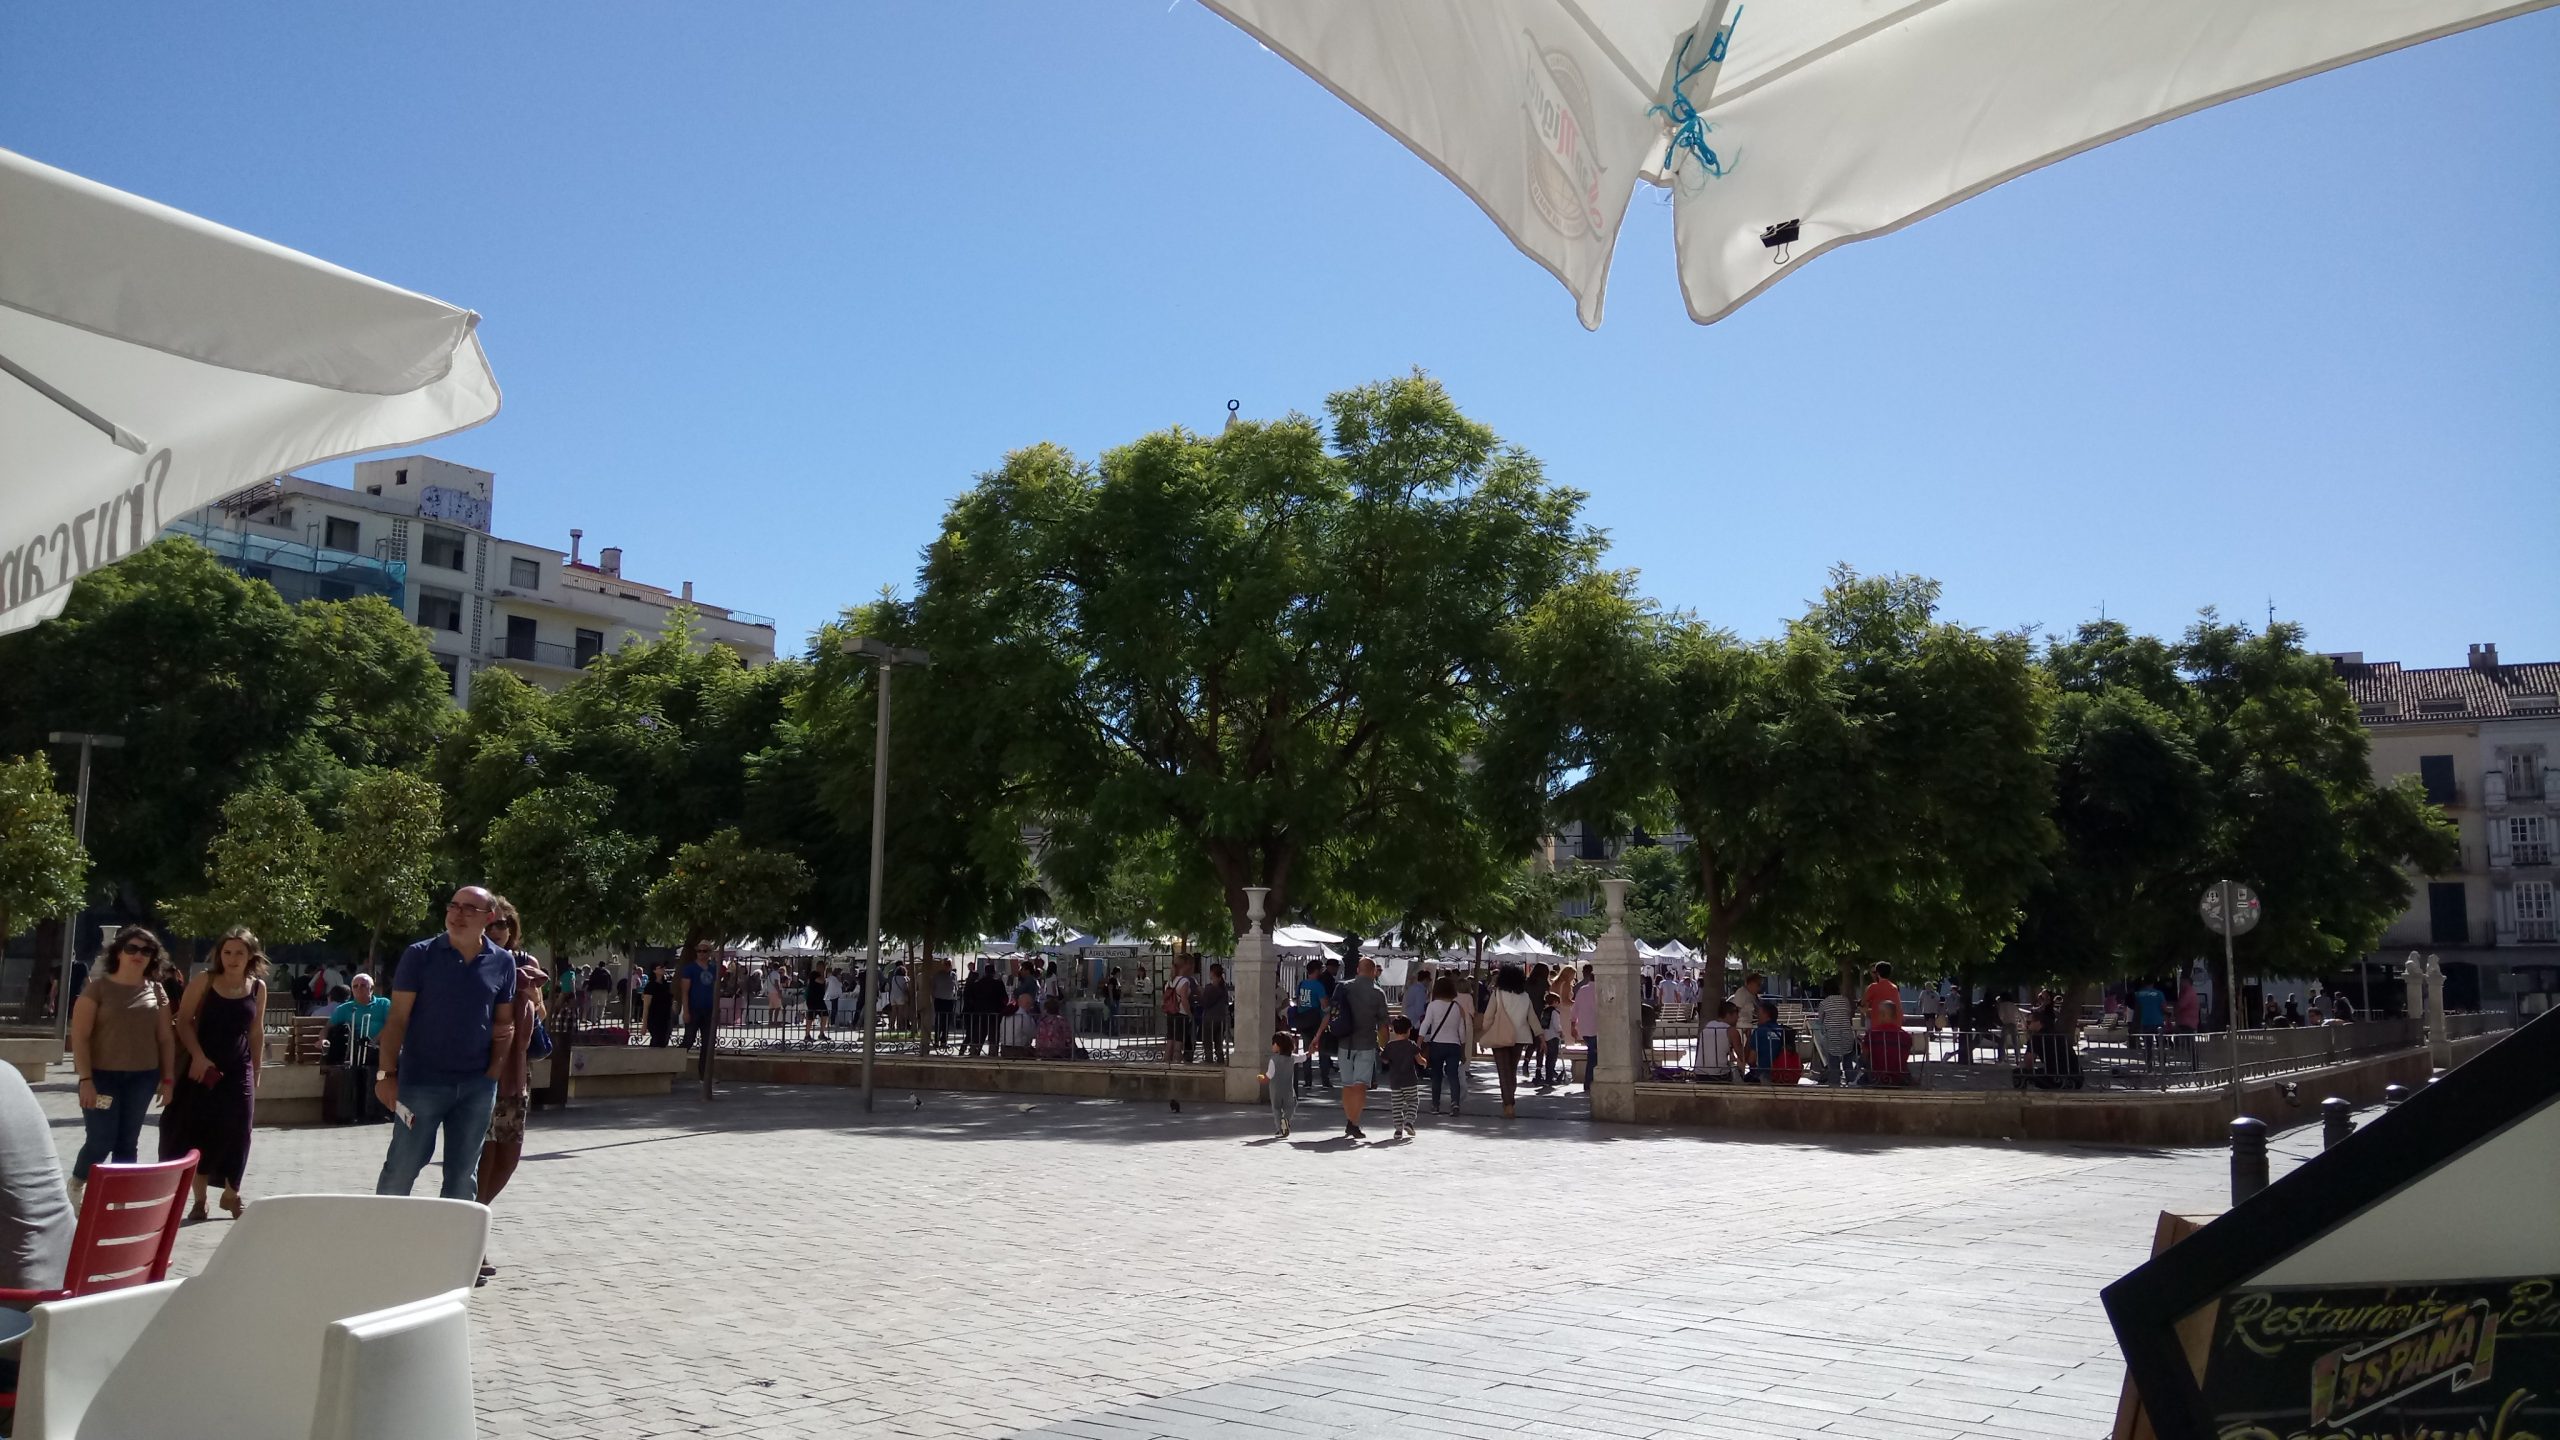 de geboorteplaats van Picasso, gelegen op Plaza de la Merced, Malaga